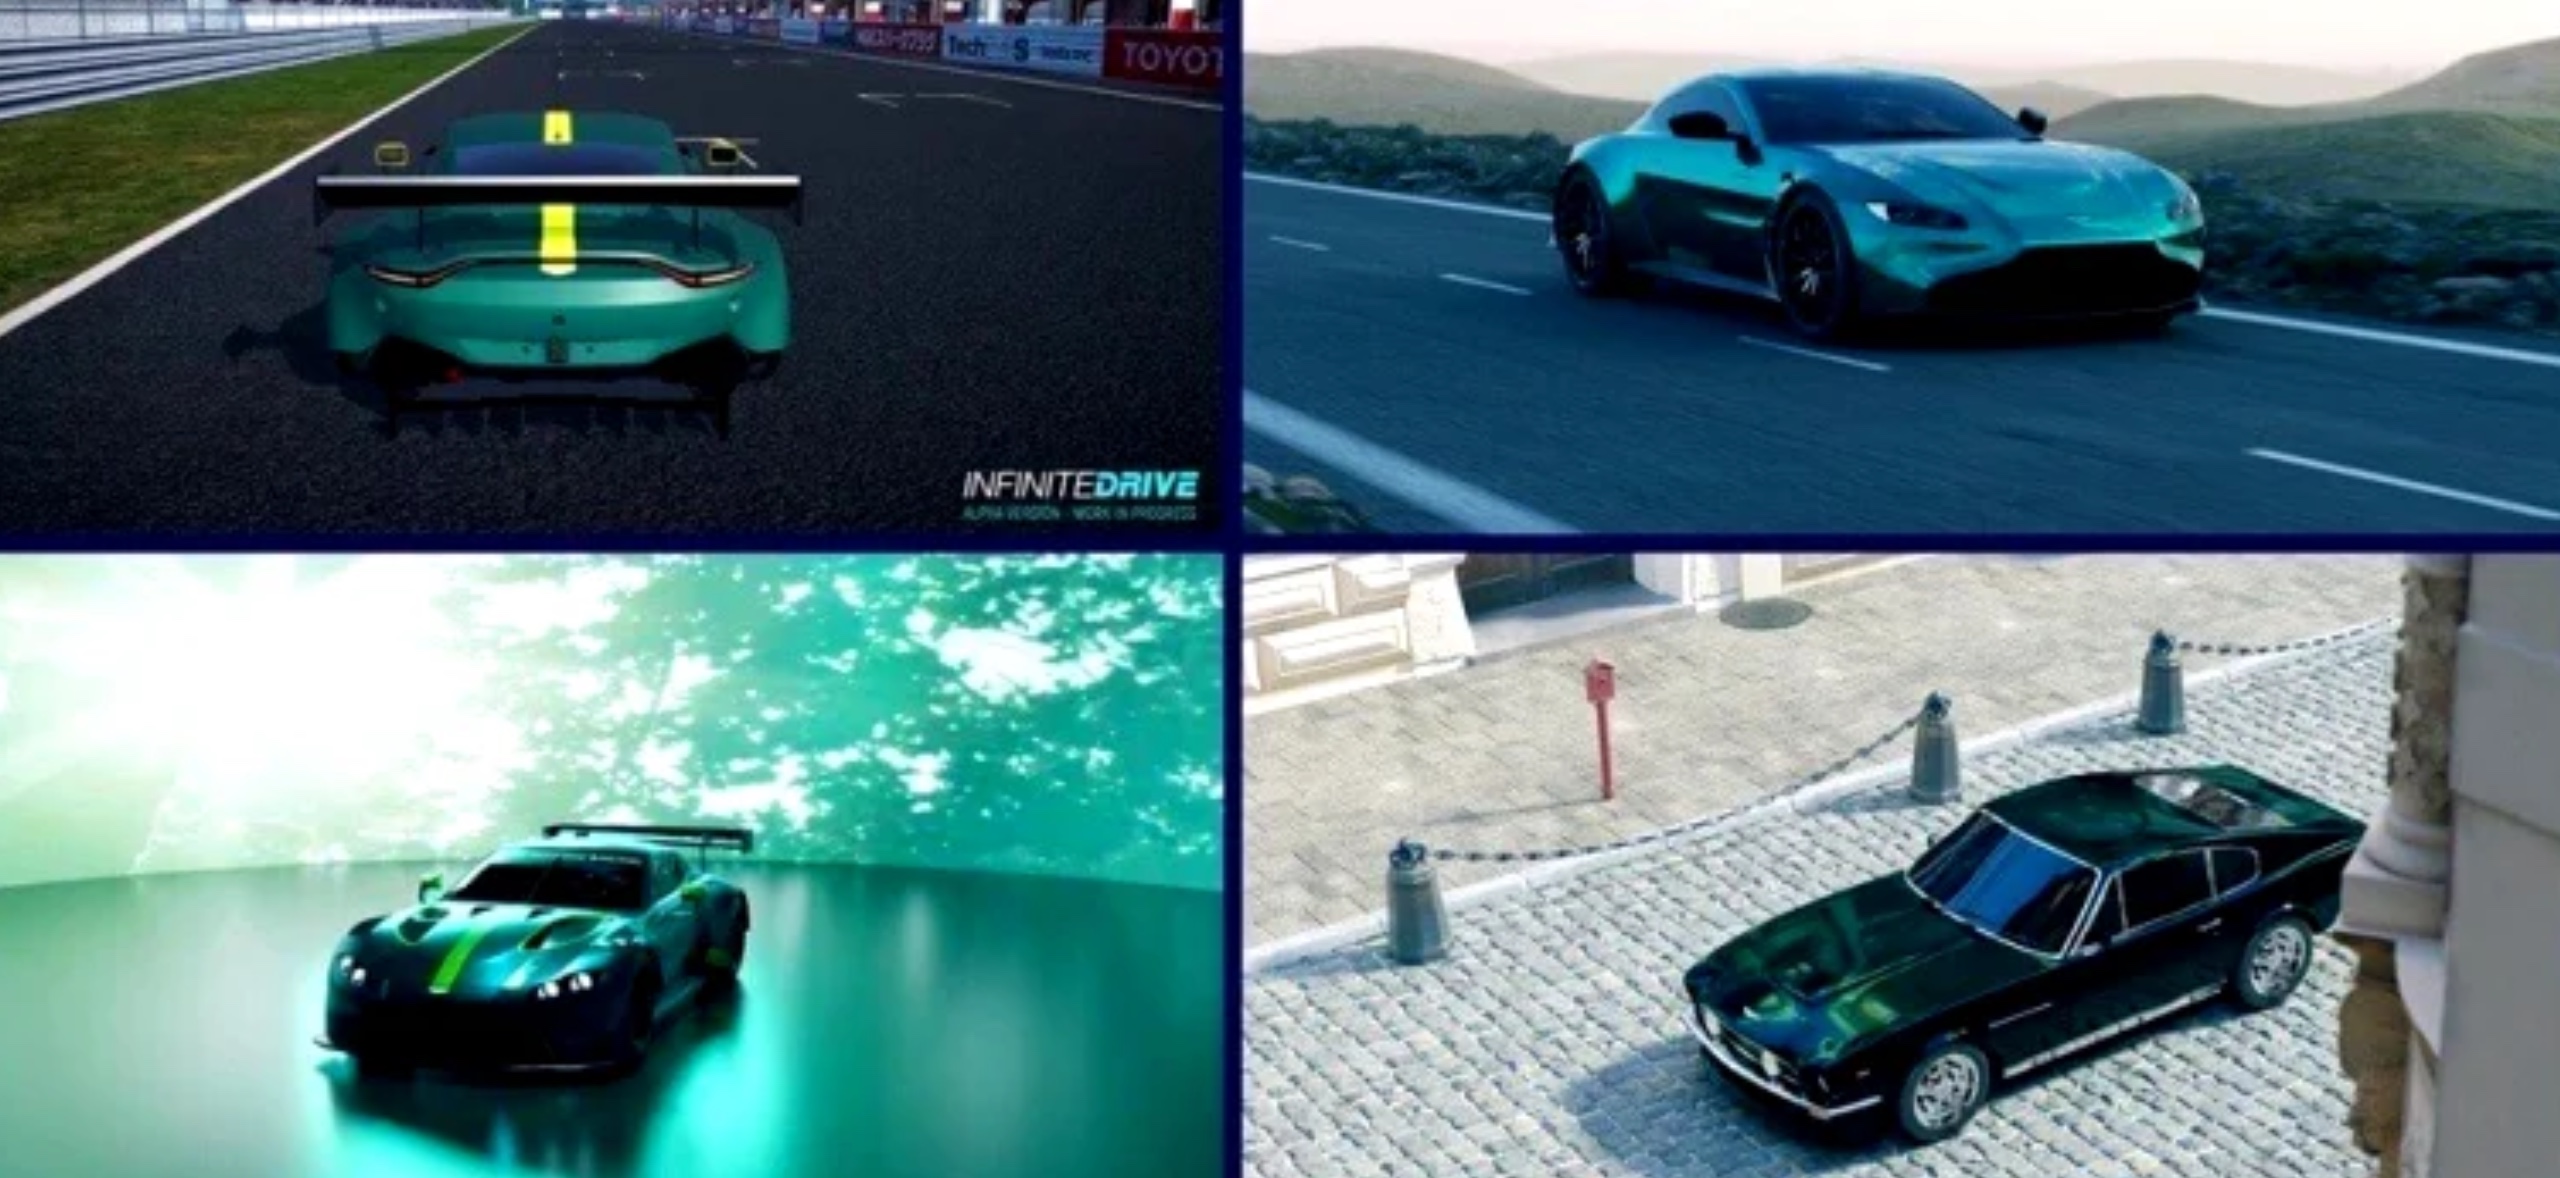 Wyczerpany EV: Honda używa VR, Szwajcaria rozważa zakaz EV, Aston Martin przechodzi na Metaverse